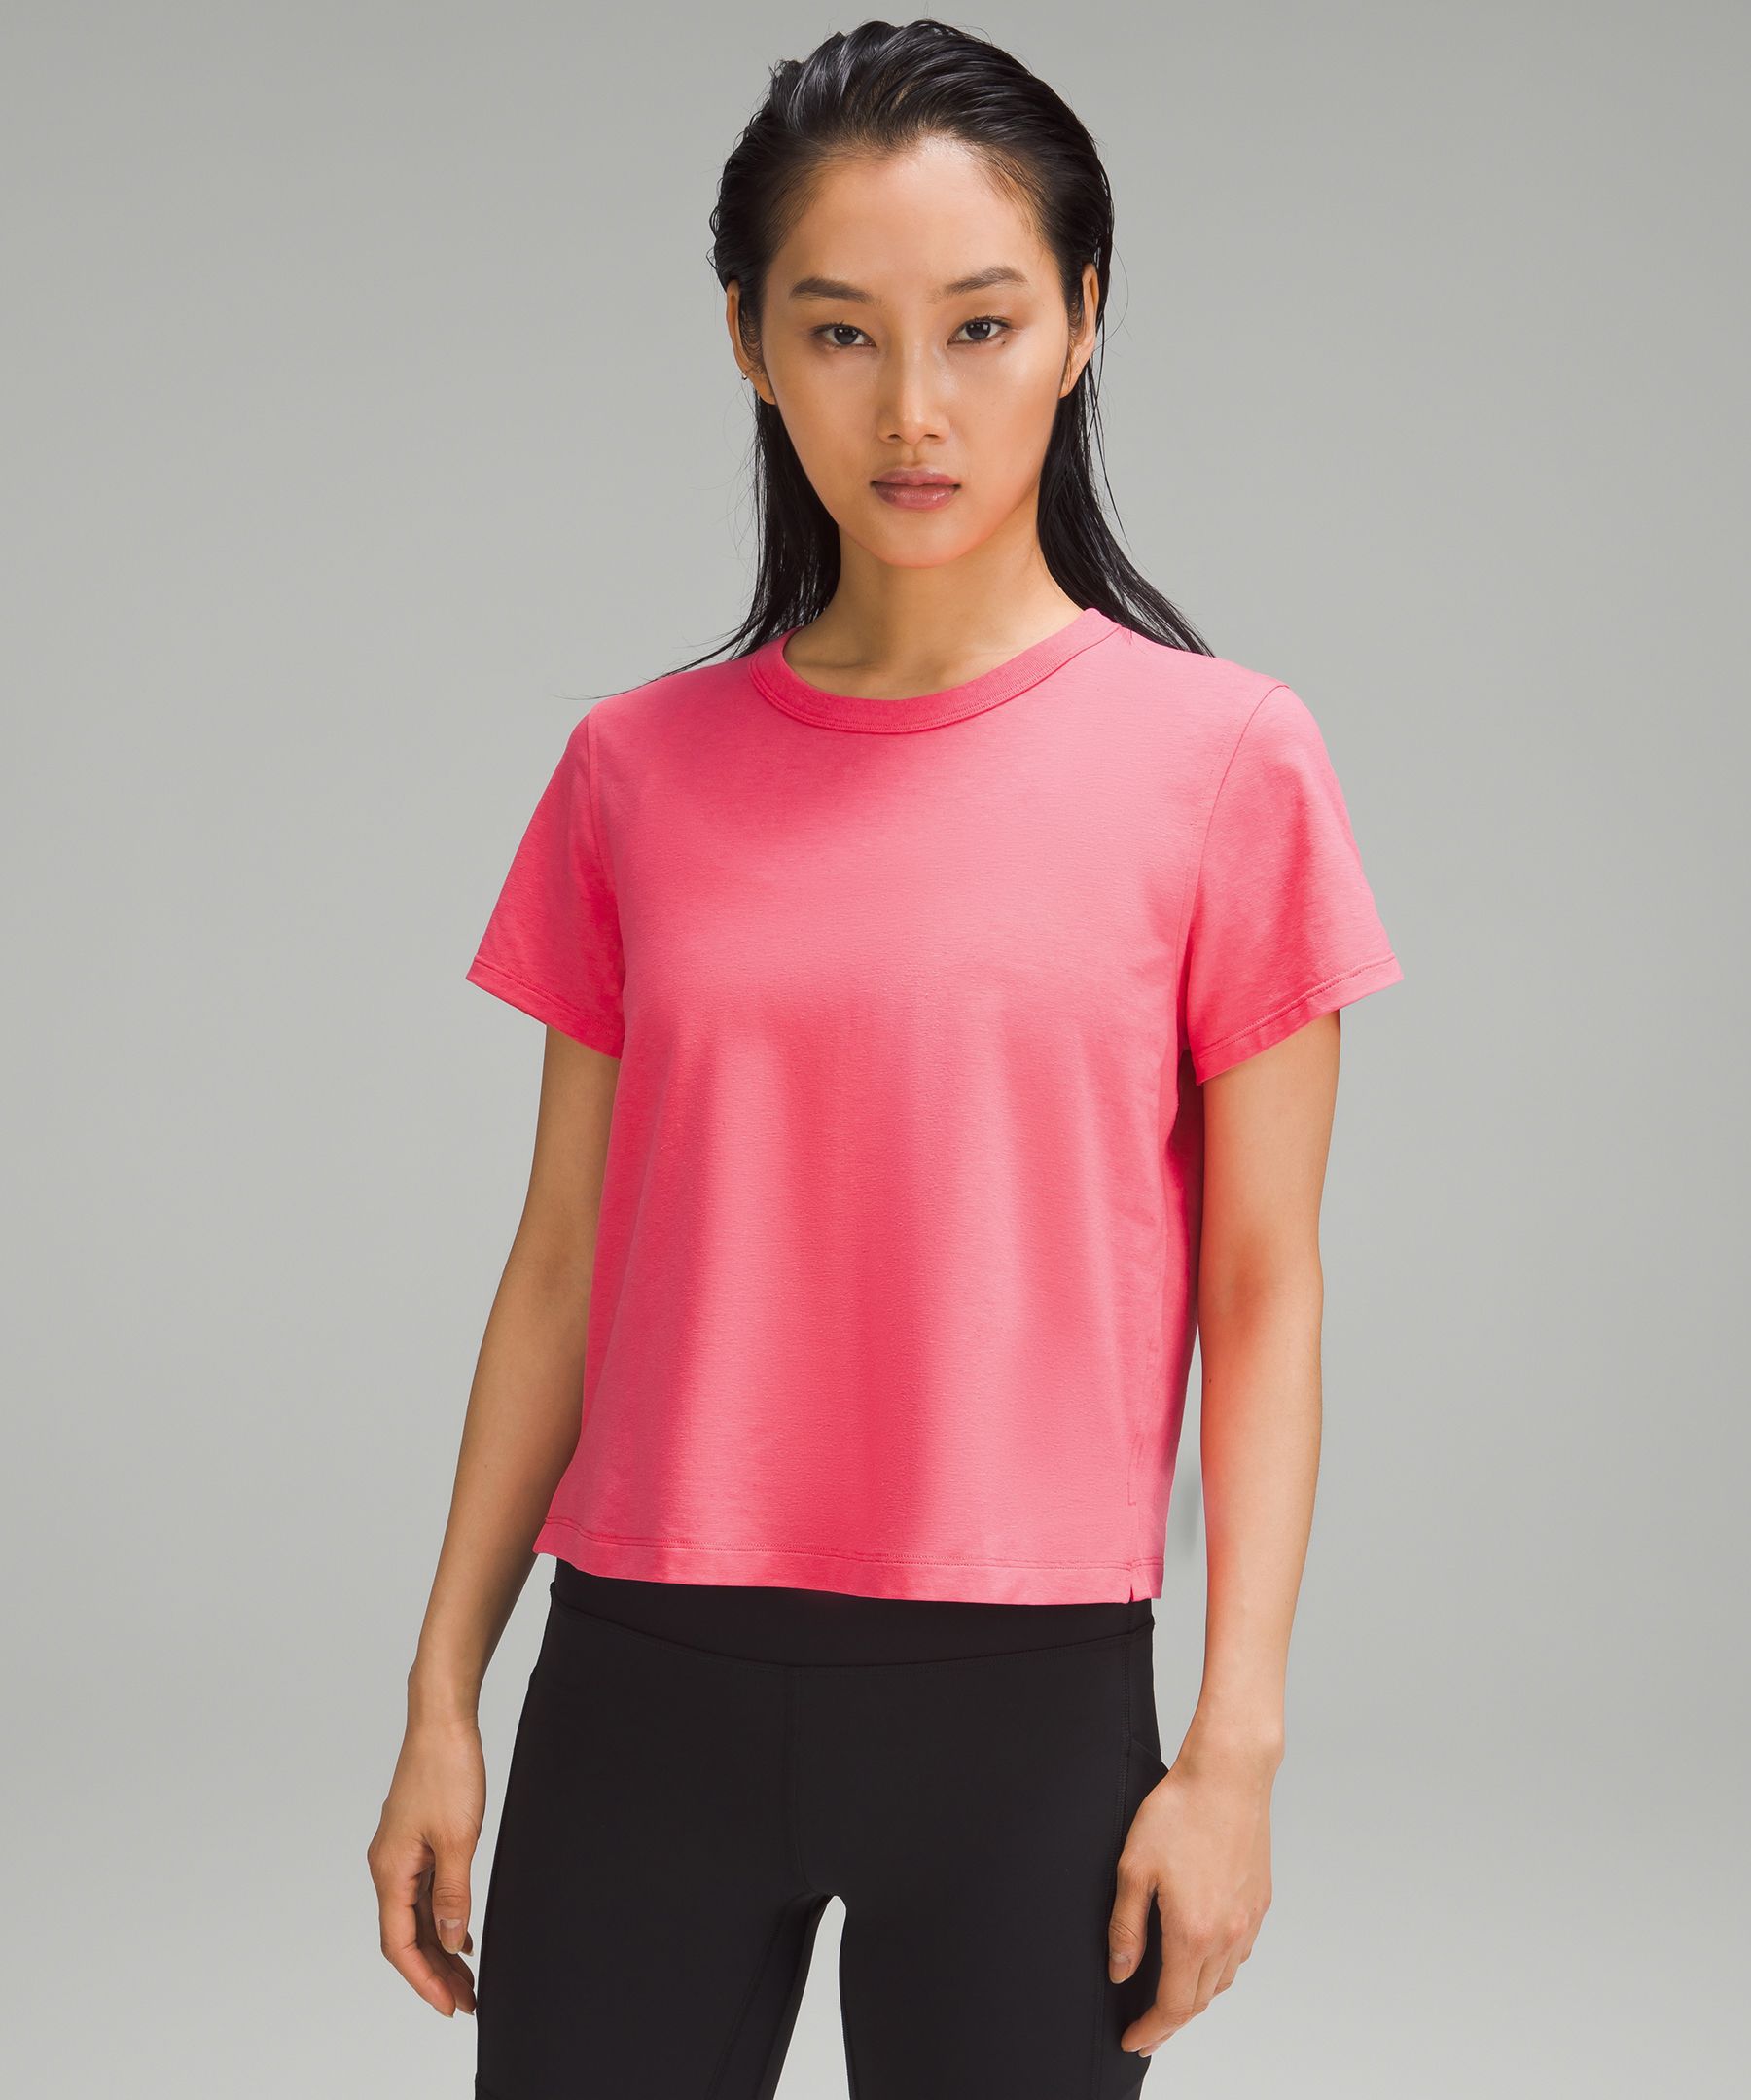 Lululemon Classic-fit Cotton-blend T-shirt